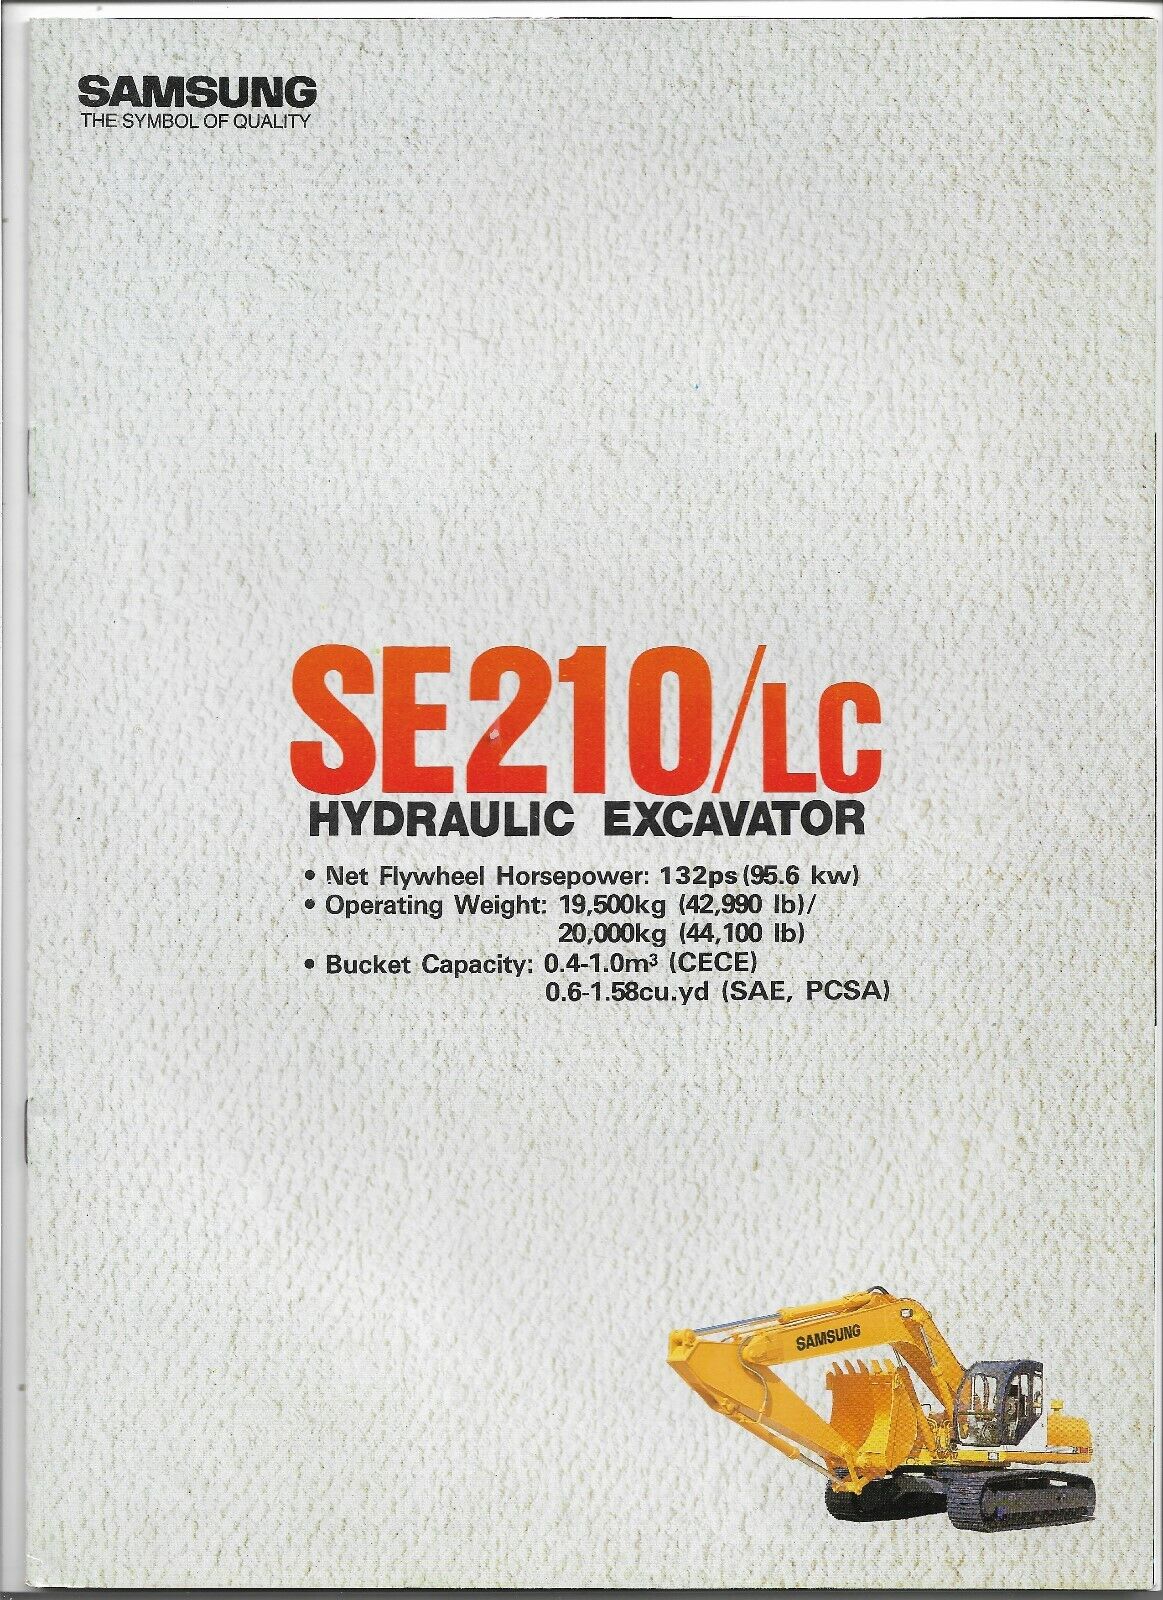 Original Samsung SE210 SE210LC Hydraulic Excavator Sales Brochure FBSE210LC9202